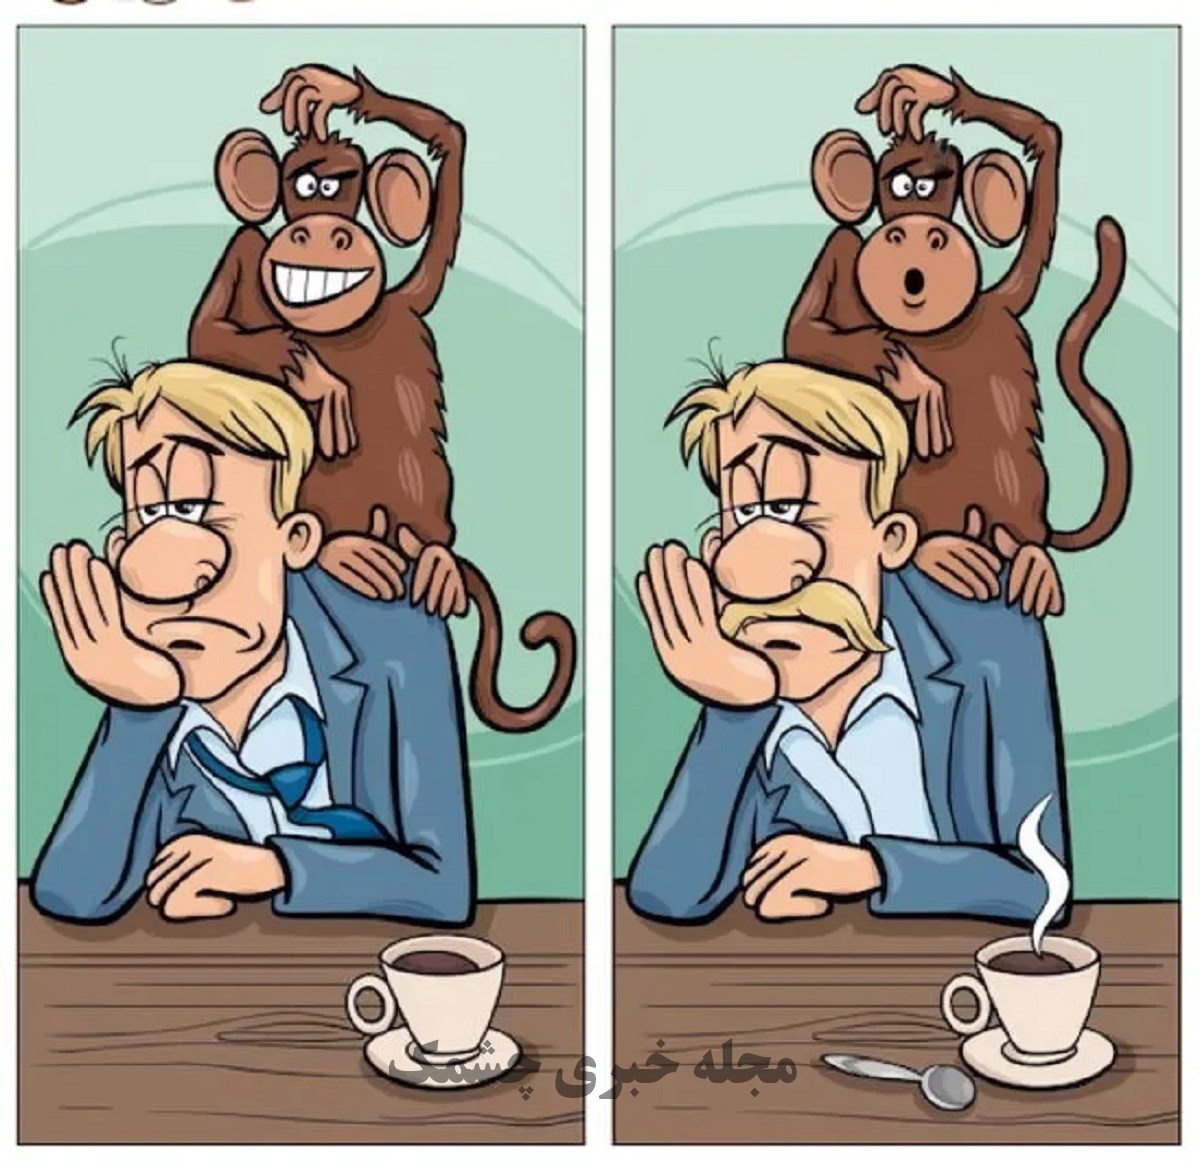 آزمون شناسایی تفاوت تصویر مرد و میمون